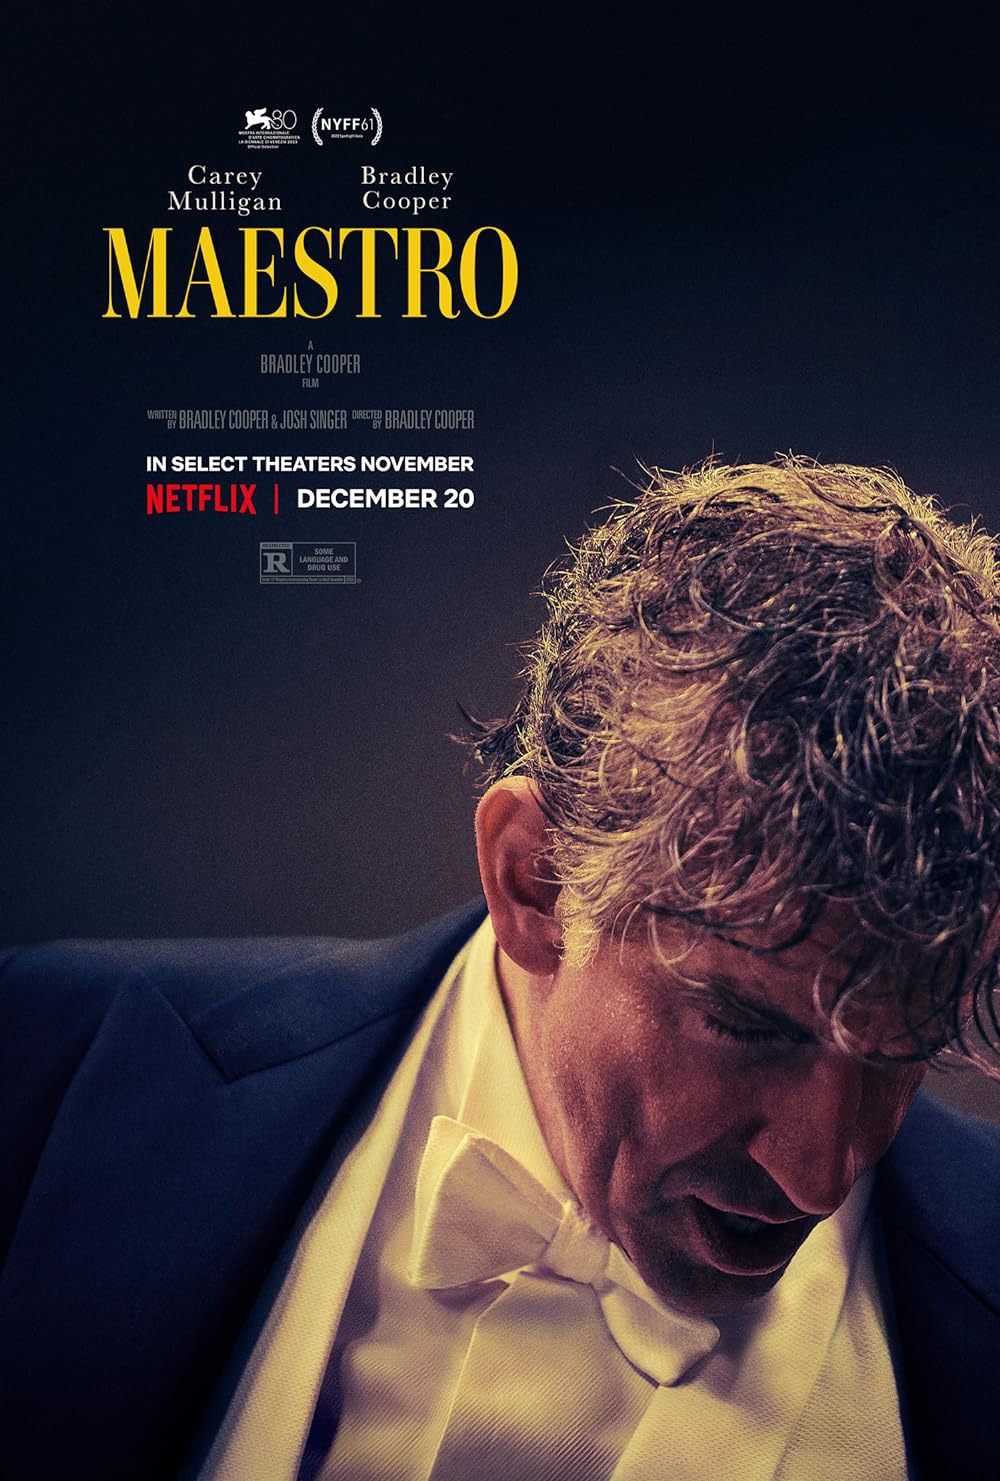 Maestro film poster